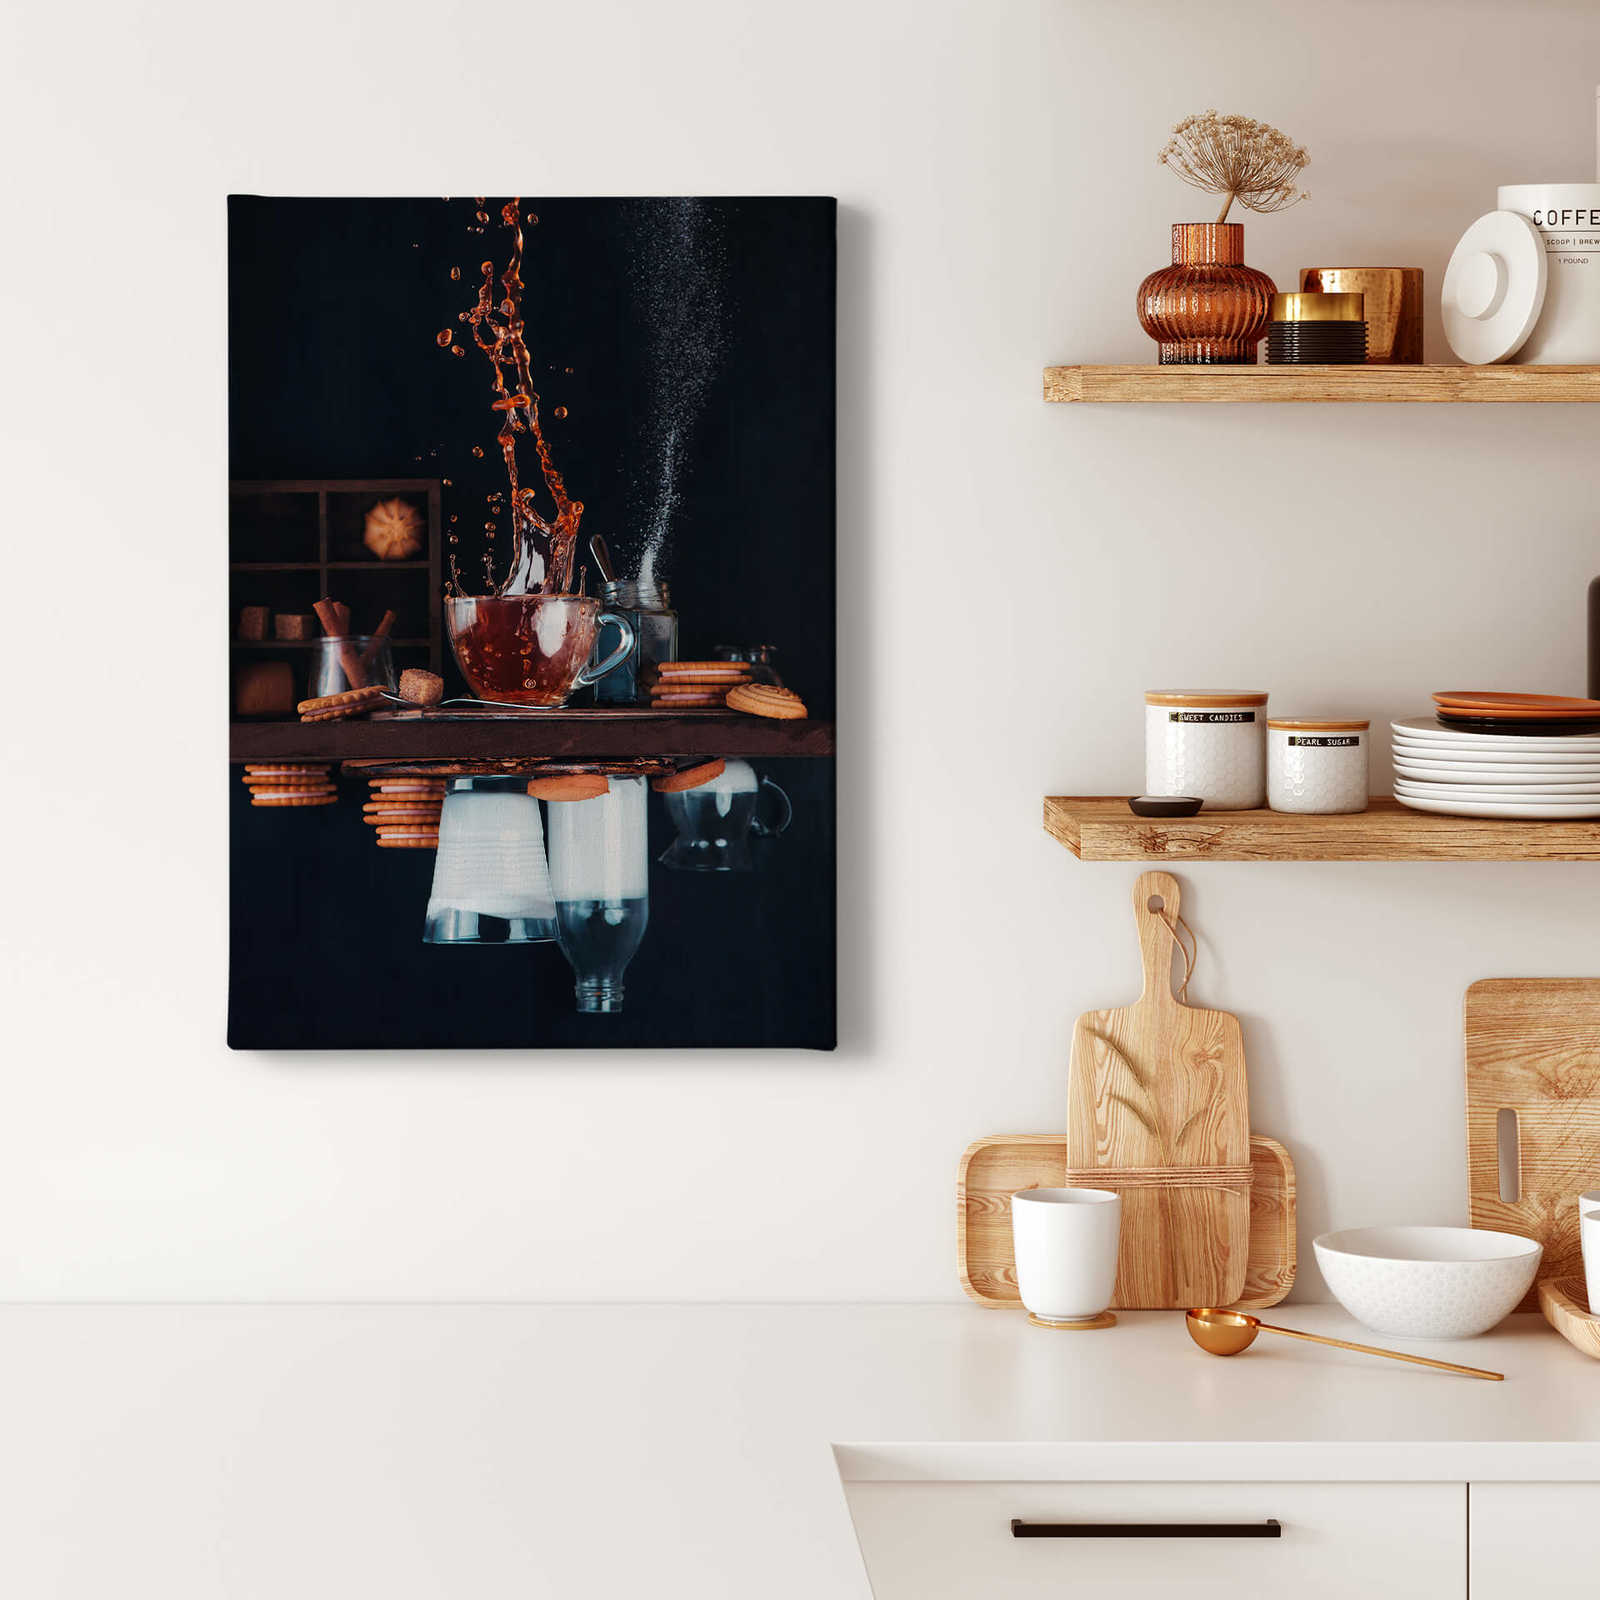             Küchen Leinwandbild von Blenkonov "Tee und Milch" – 0,50 m x 0,70 m
        